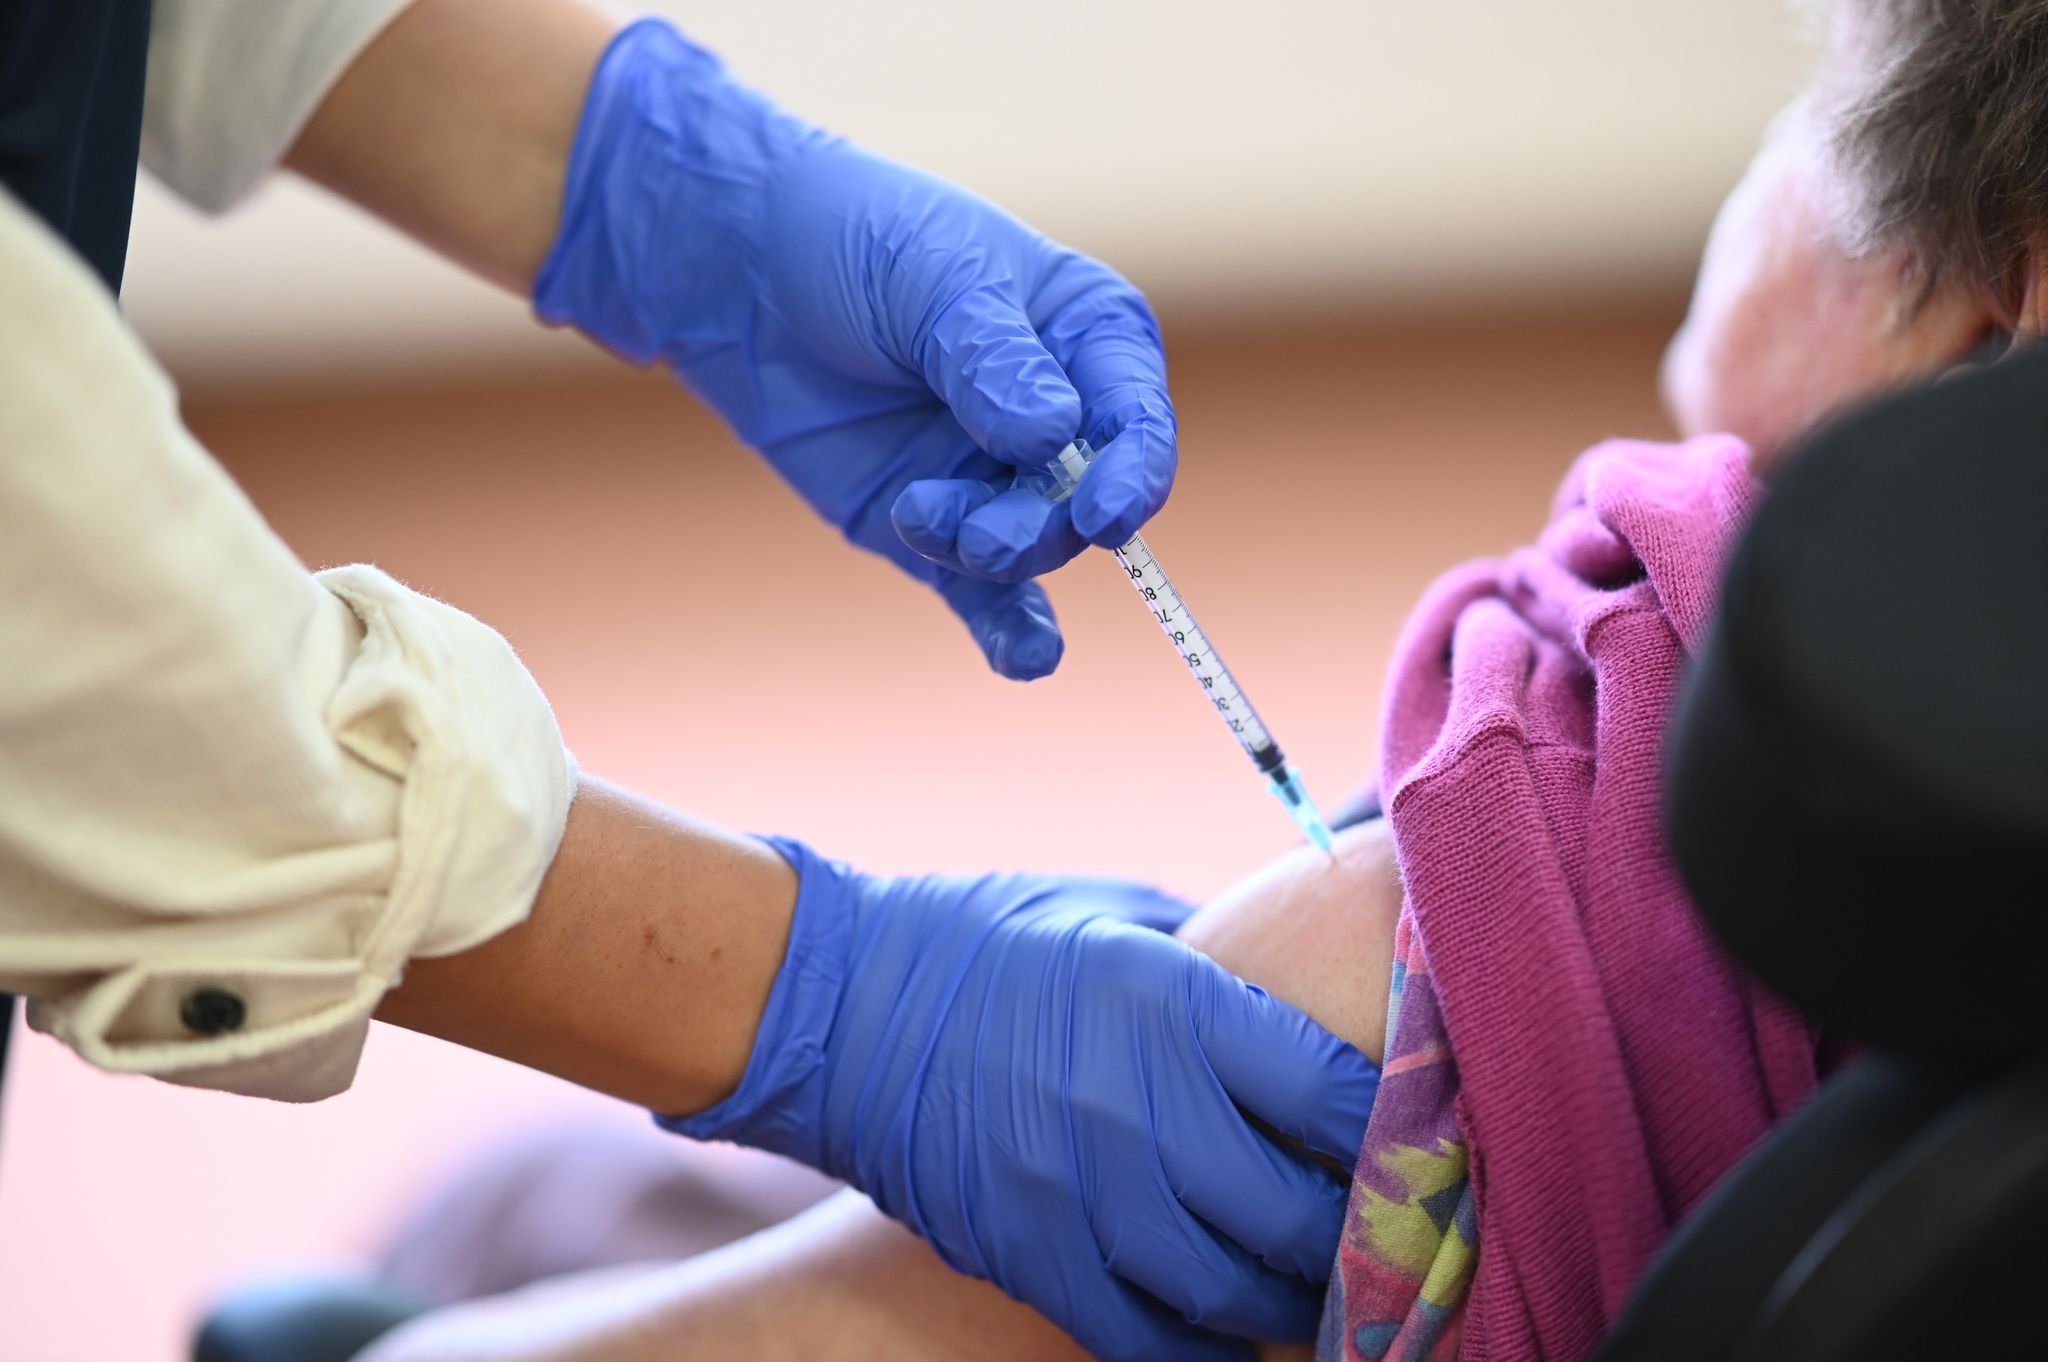 Rund zwei Drittel der Menschen ab 60 Jahren, die bereits dreimal geimpft sind, können sich einer Umfrage zufolge auch eine vierte Corona-Impfung vorstellen.